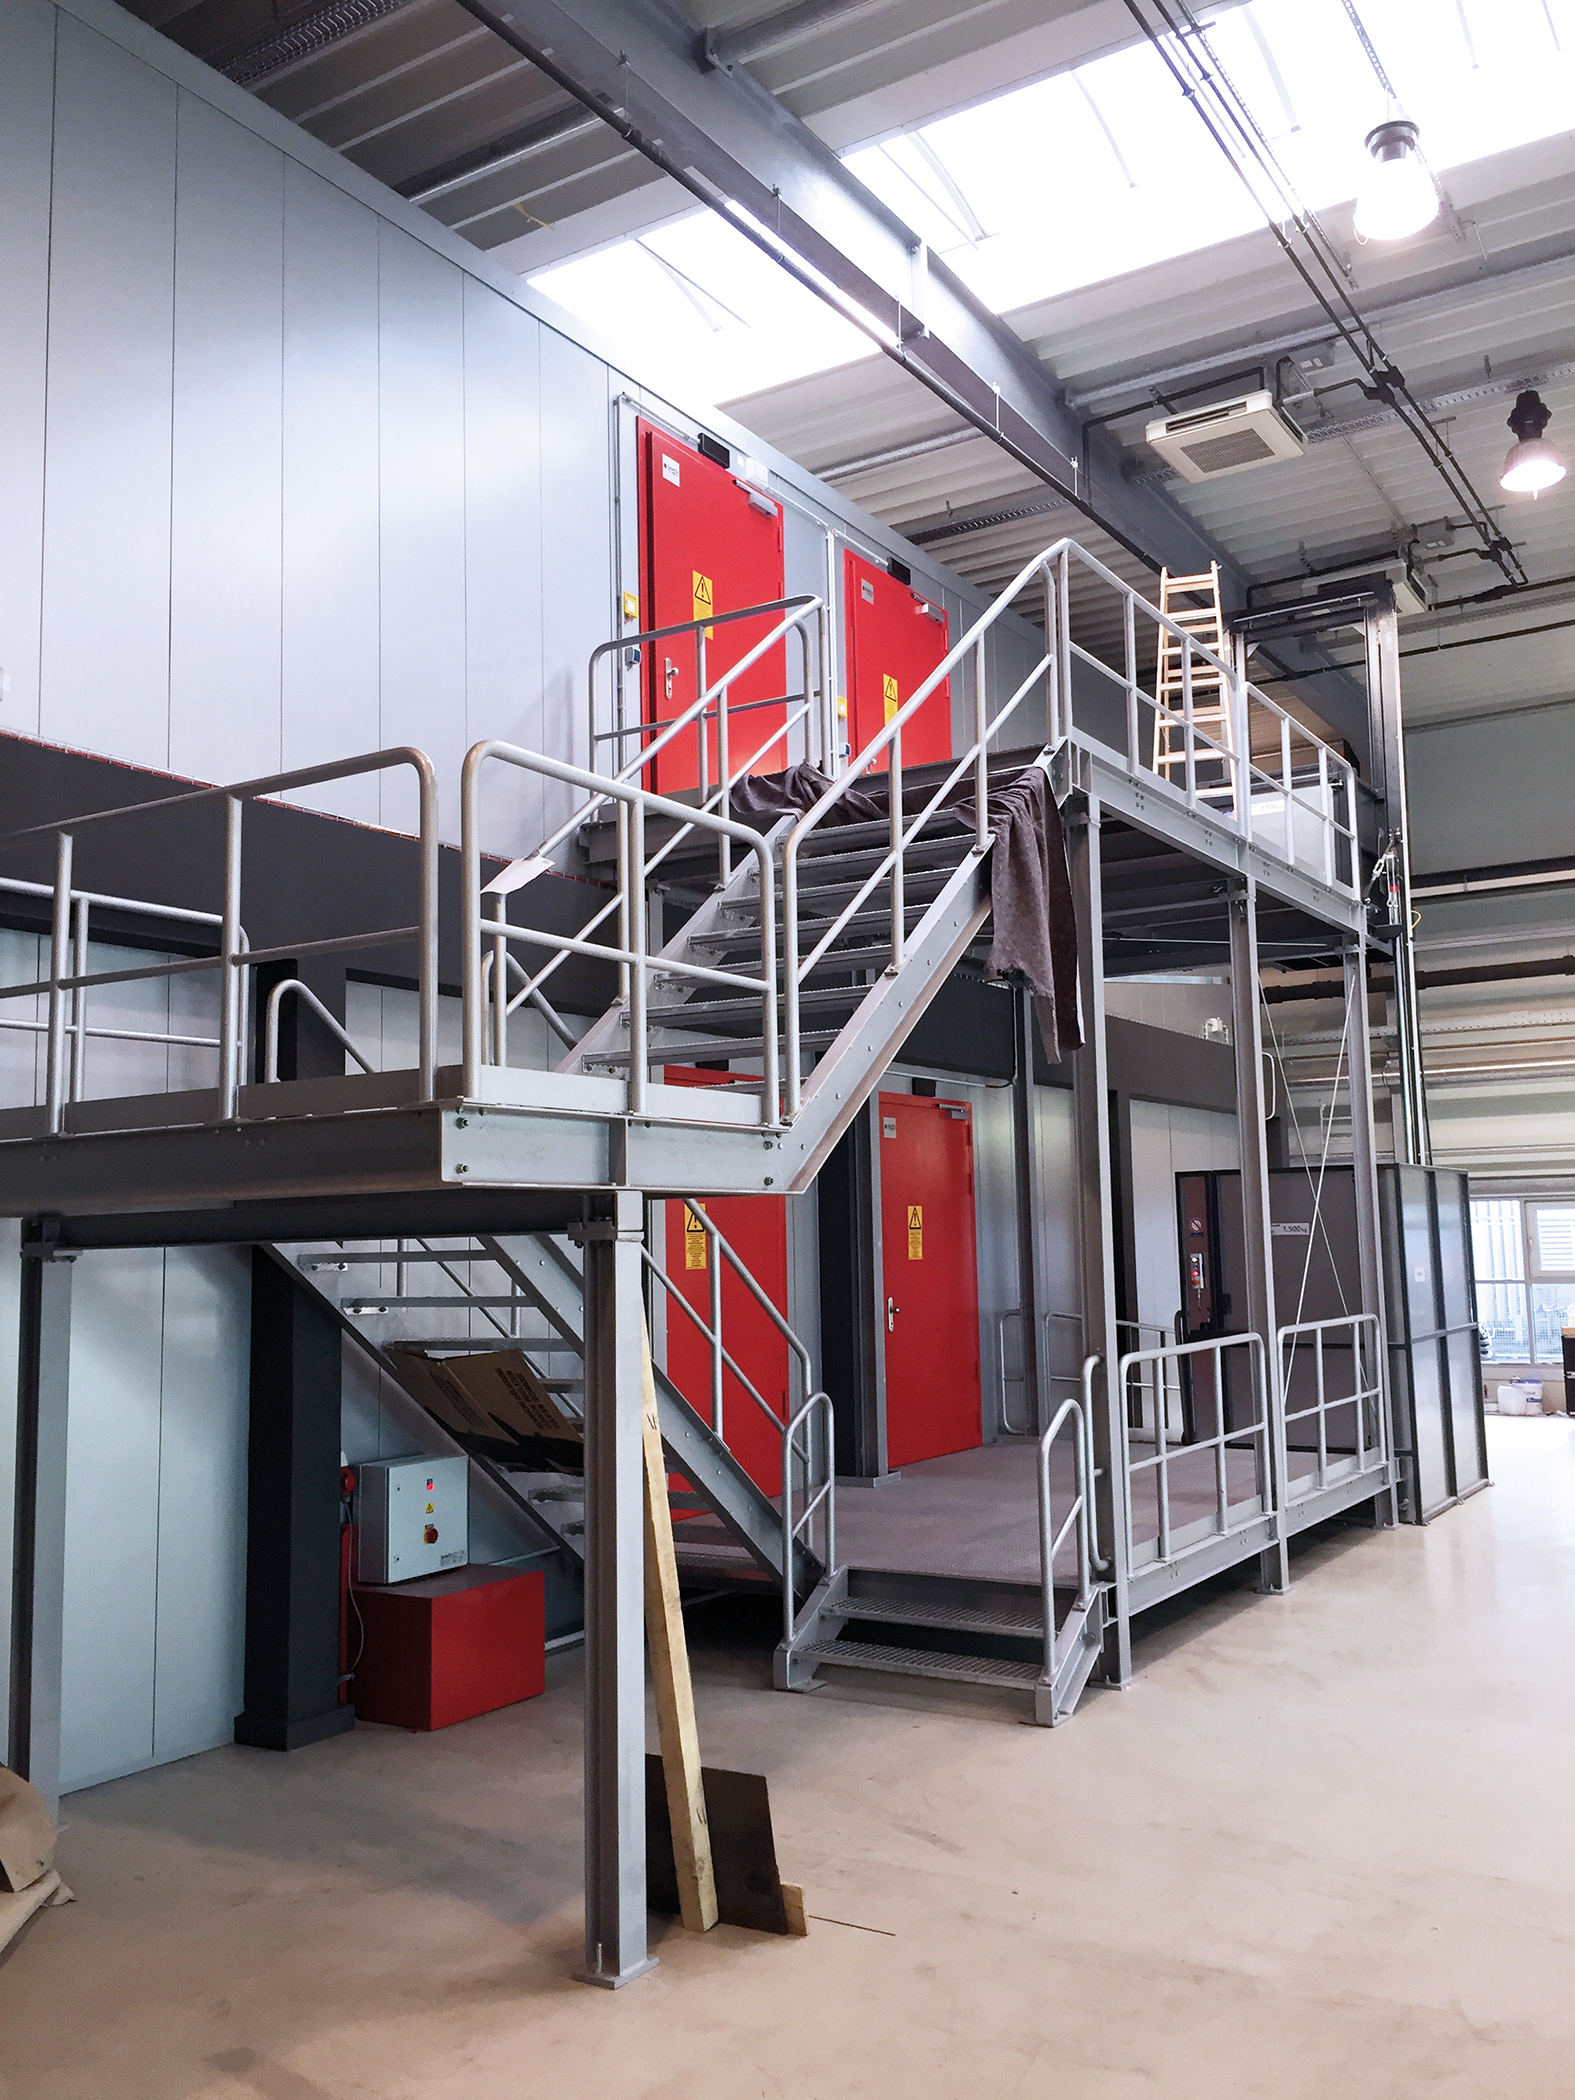 Zweistöckiges Rechenzentrum mit roten Sicherheitstüren und Treppen